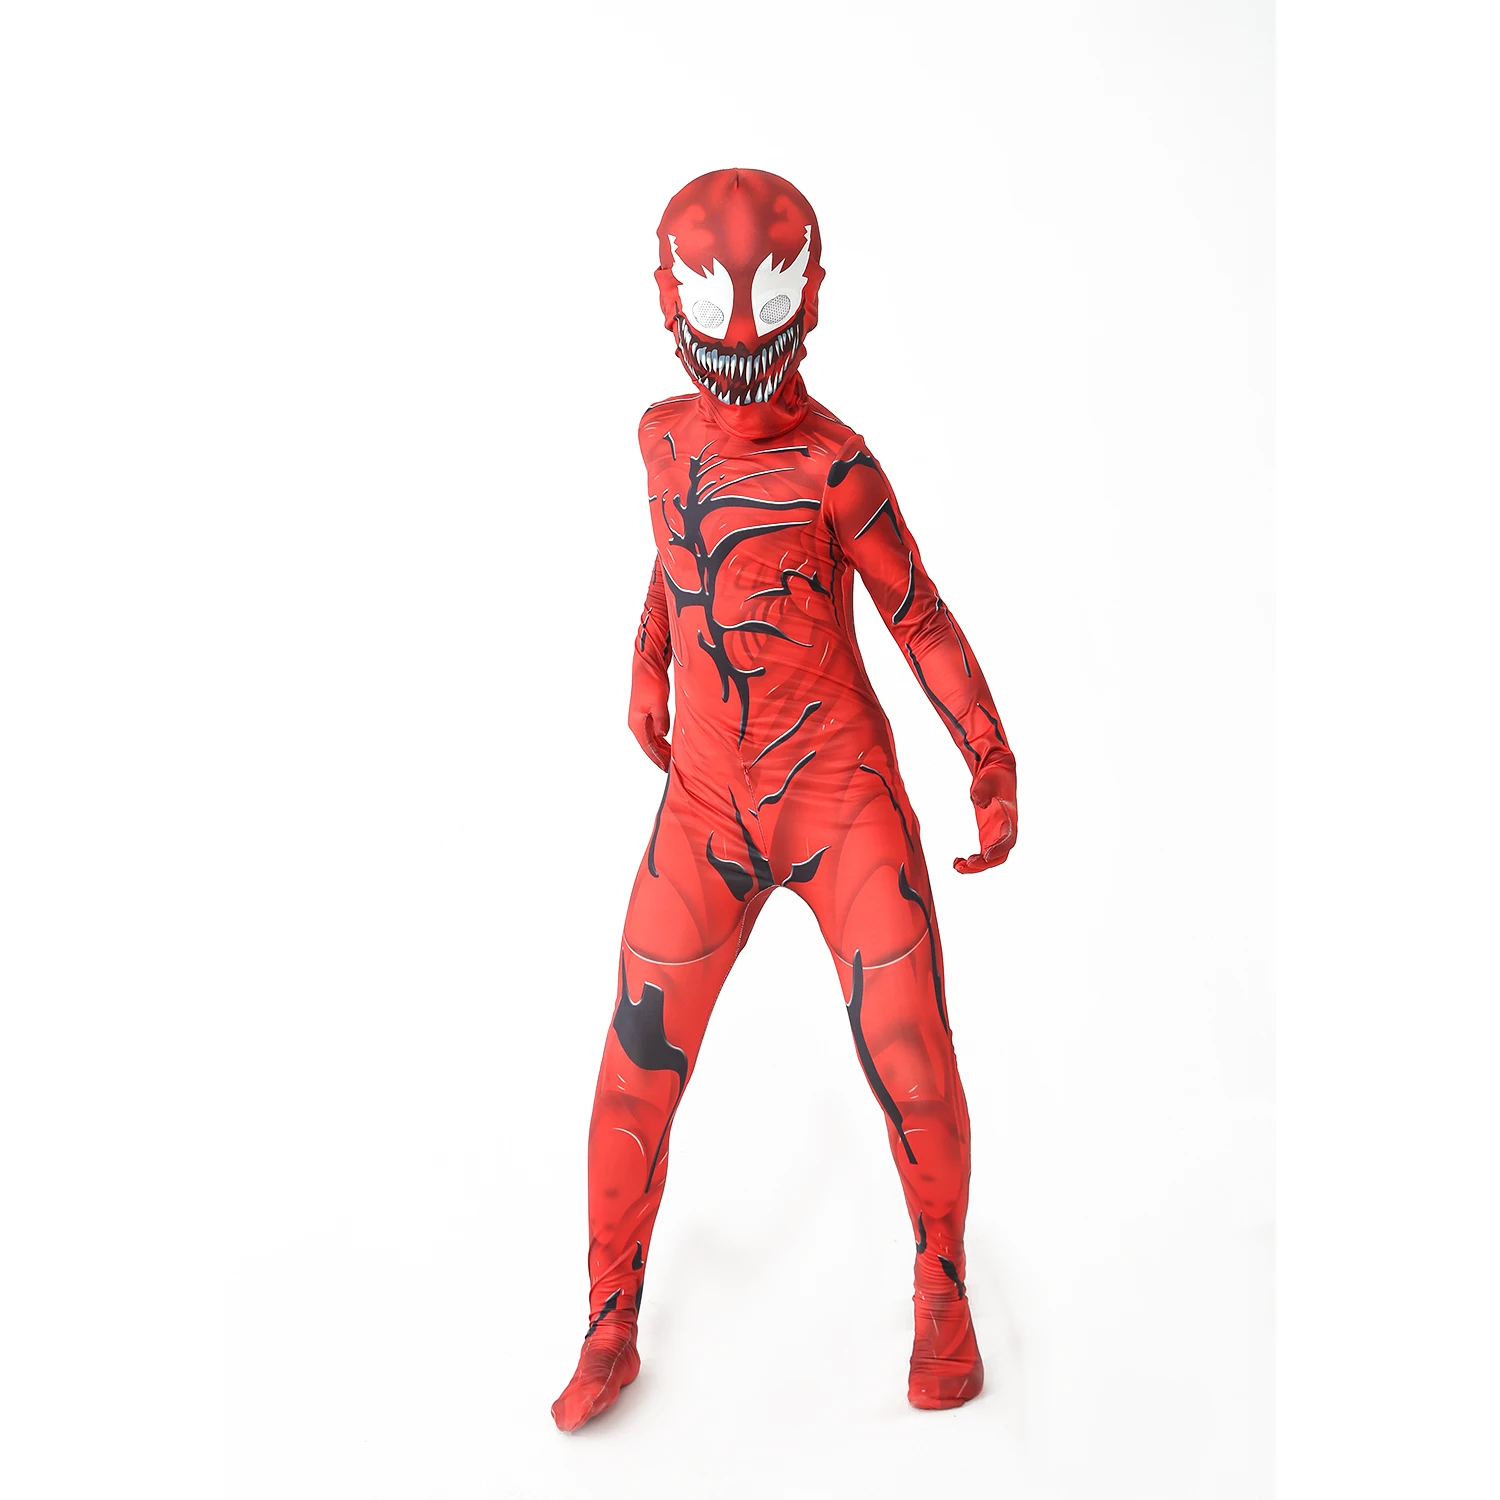 Superheros Cosplay halloween kostüme fürnew venom kostüm kinder anzug overall jungen symbiote spidermancostumes